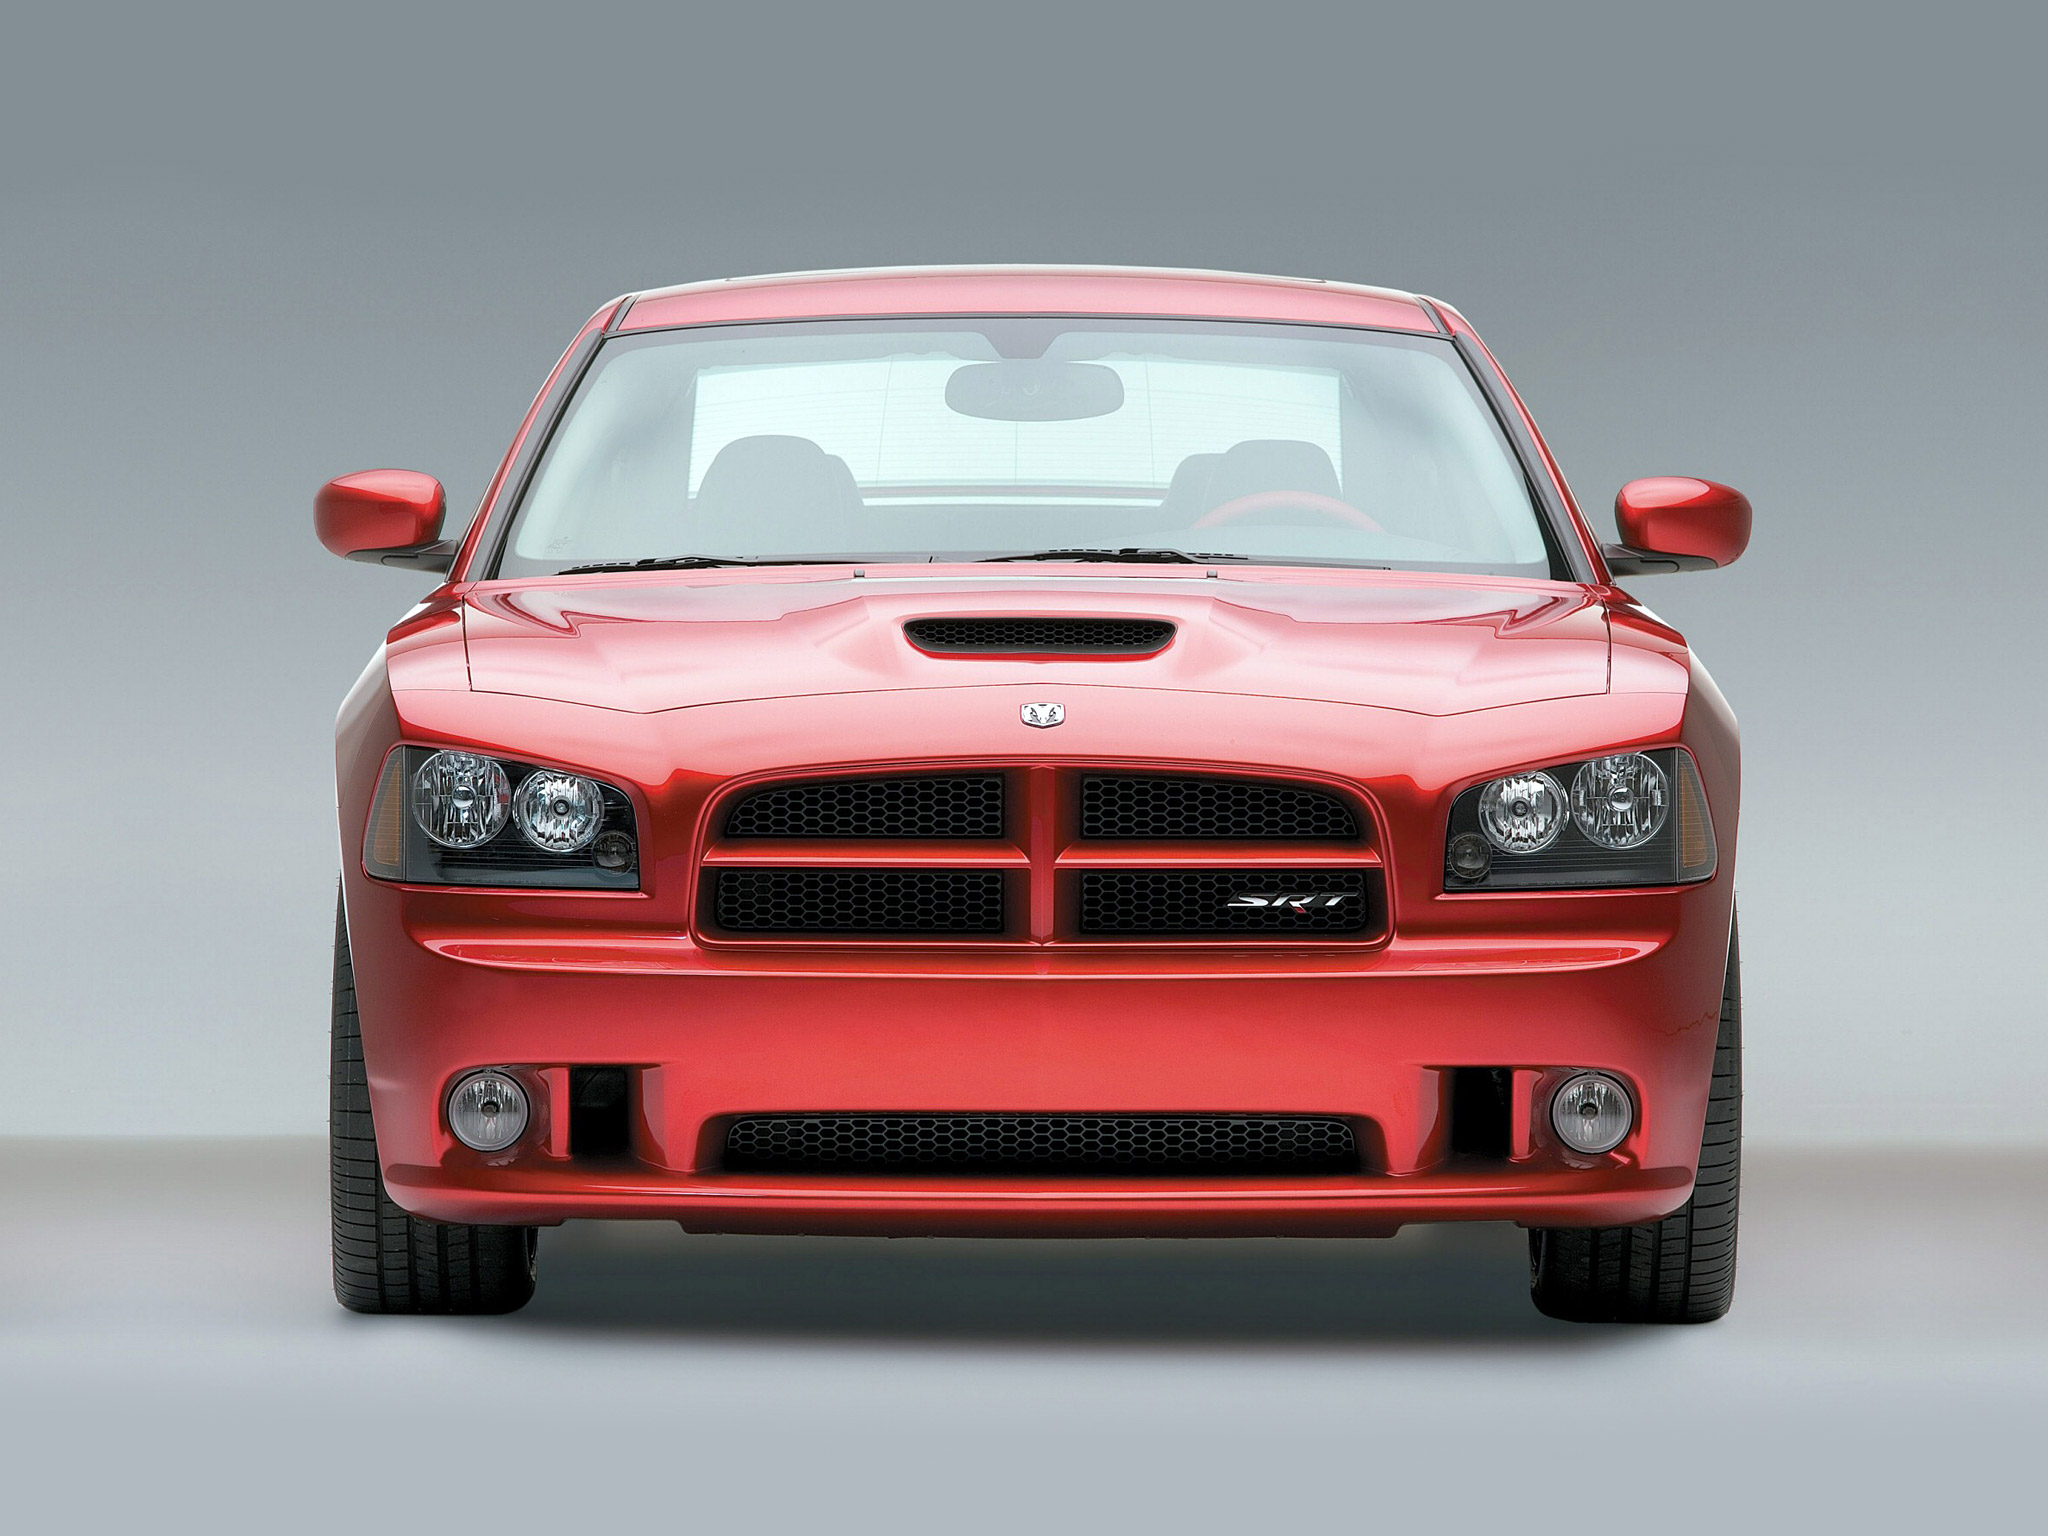  2006 Dodge Charger SRT8 Wallpaper.